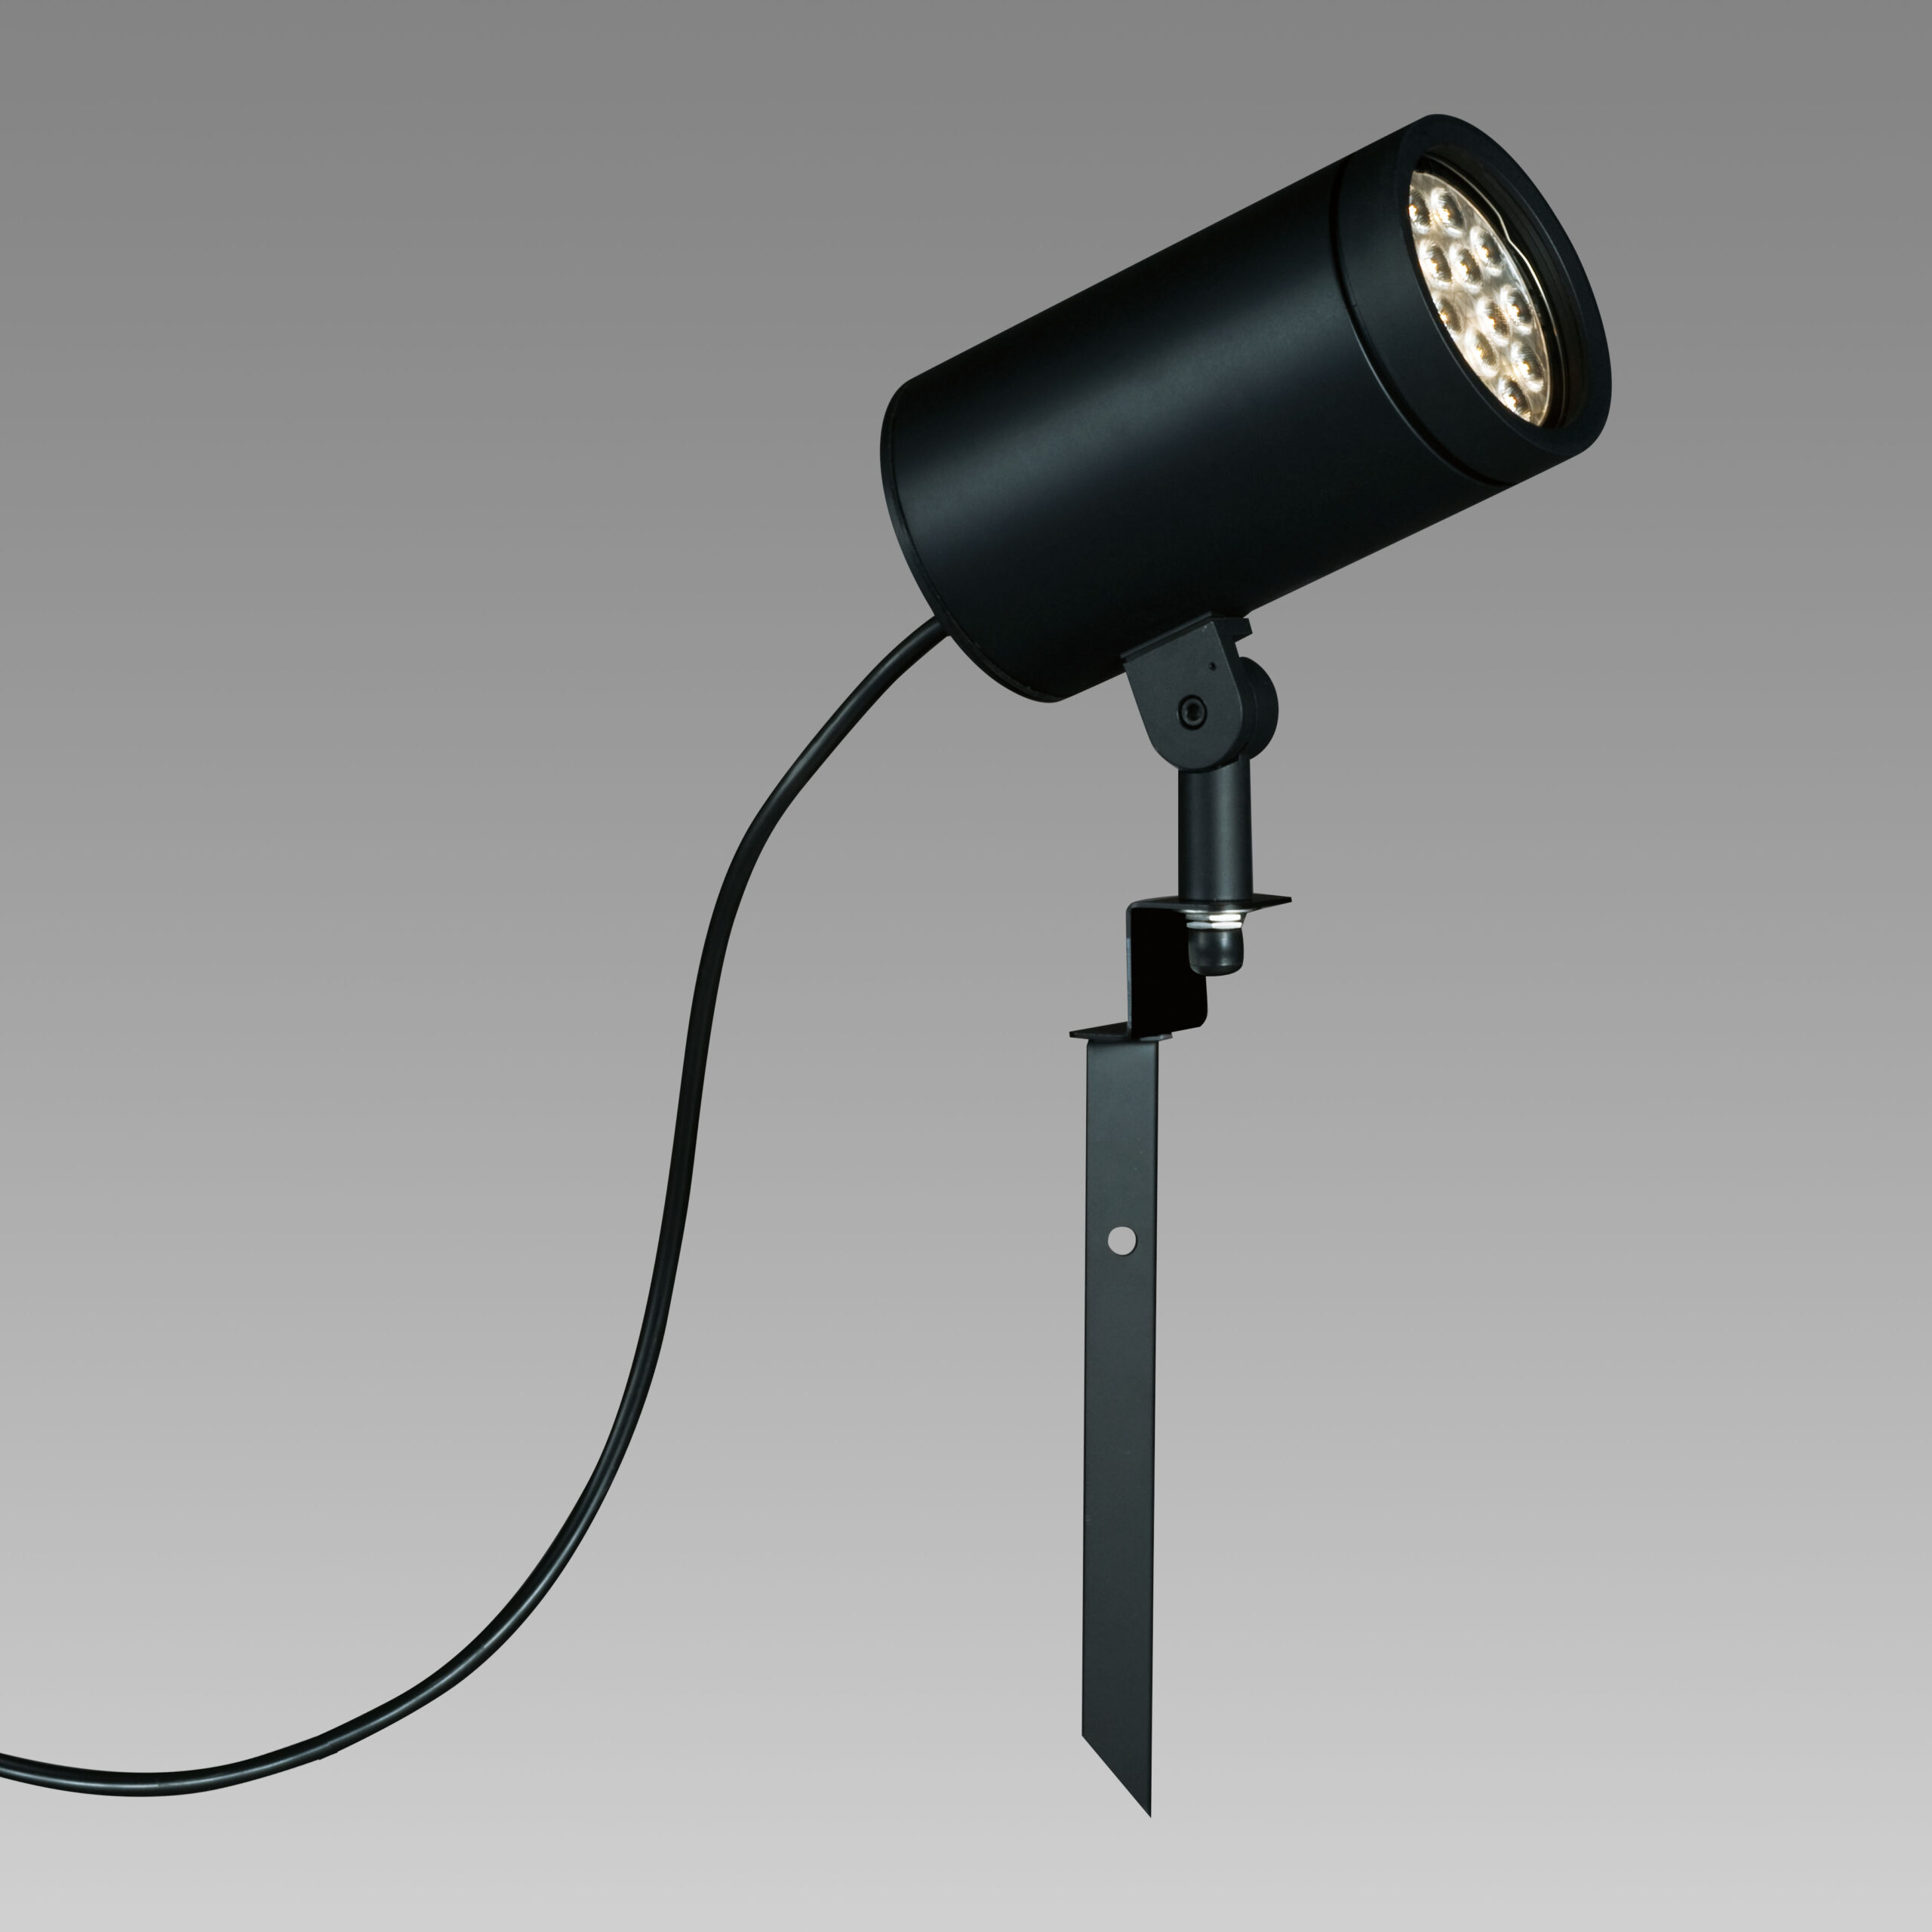 山田照明 山田照明 Compact Spot Neo（コンパクト・スポット・ネオ） 屋外用スポットライト 黒色 LED（昼白色） 36度 AD-3145-L 